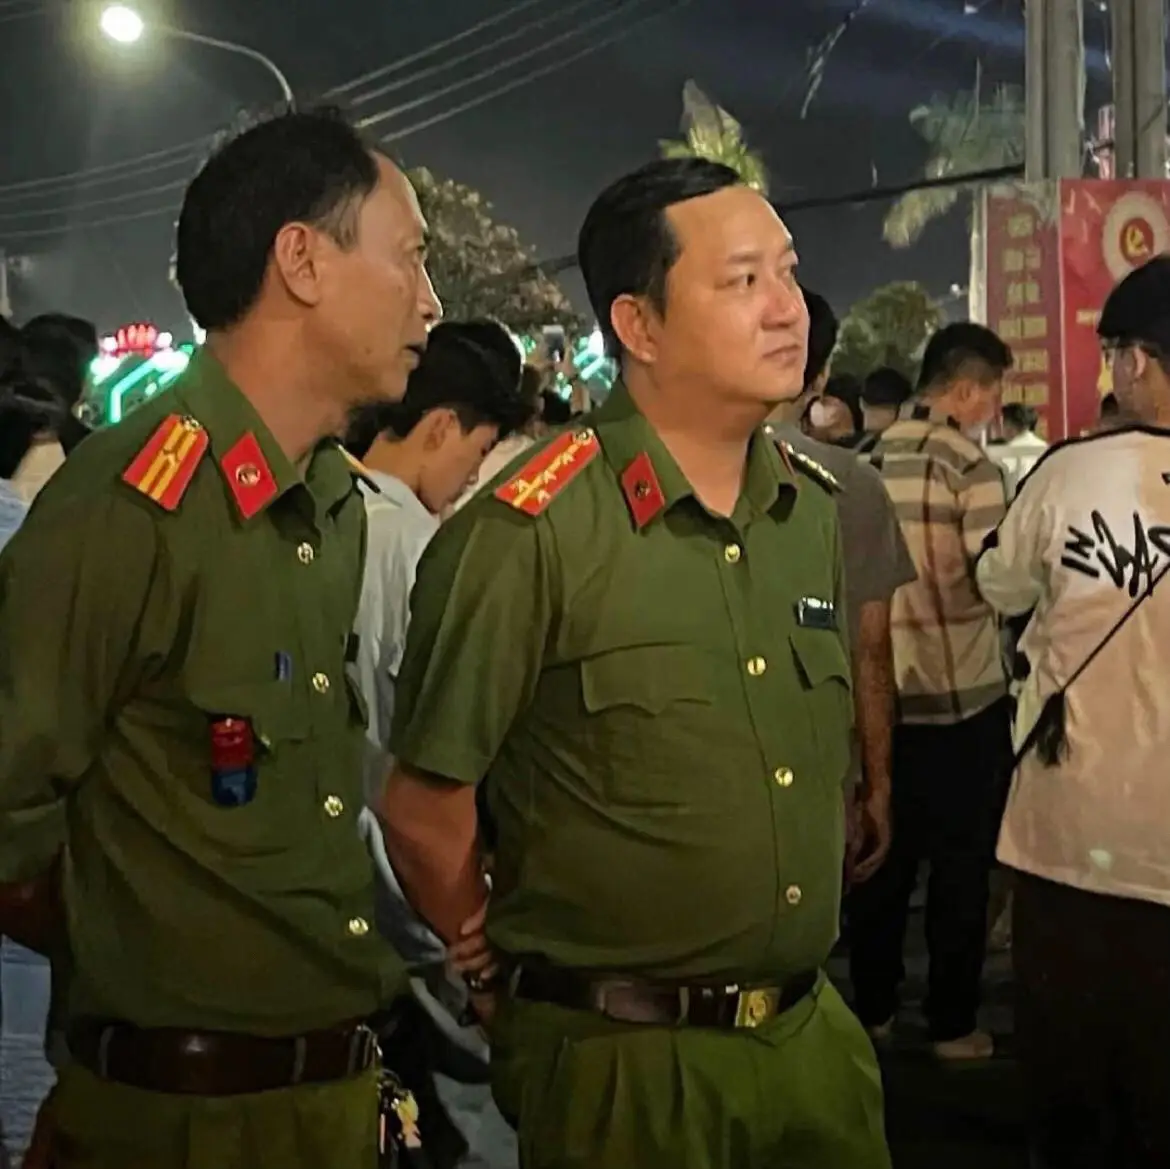 Lính nhìn síp thôi mà 😆#xuhuong #viral #fyp #nvca 